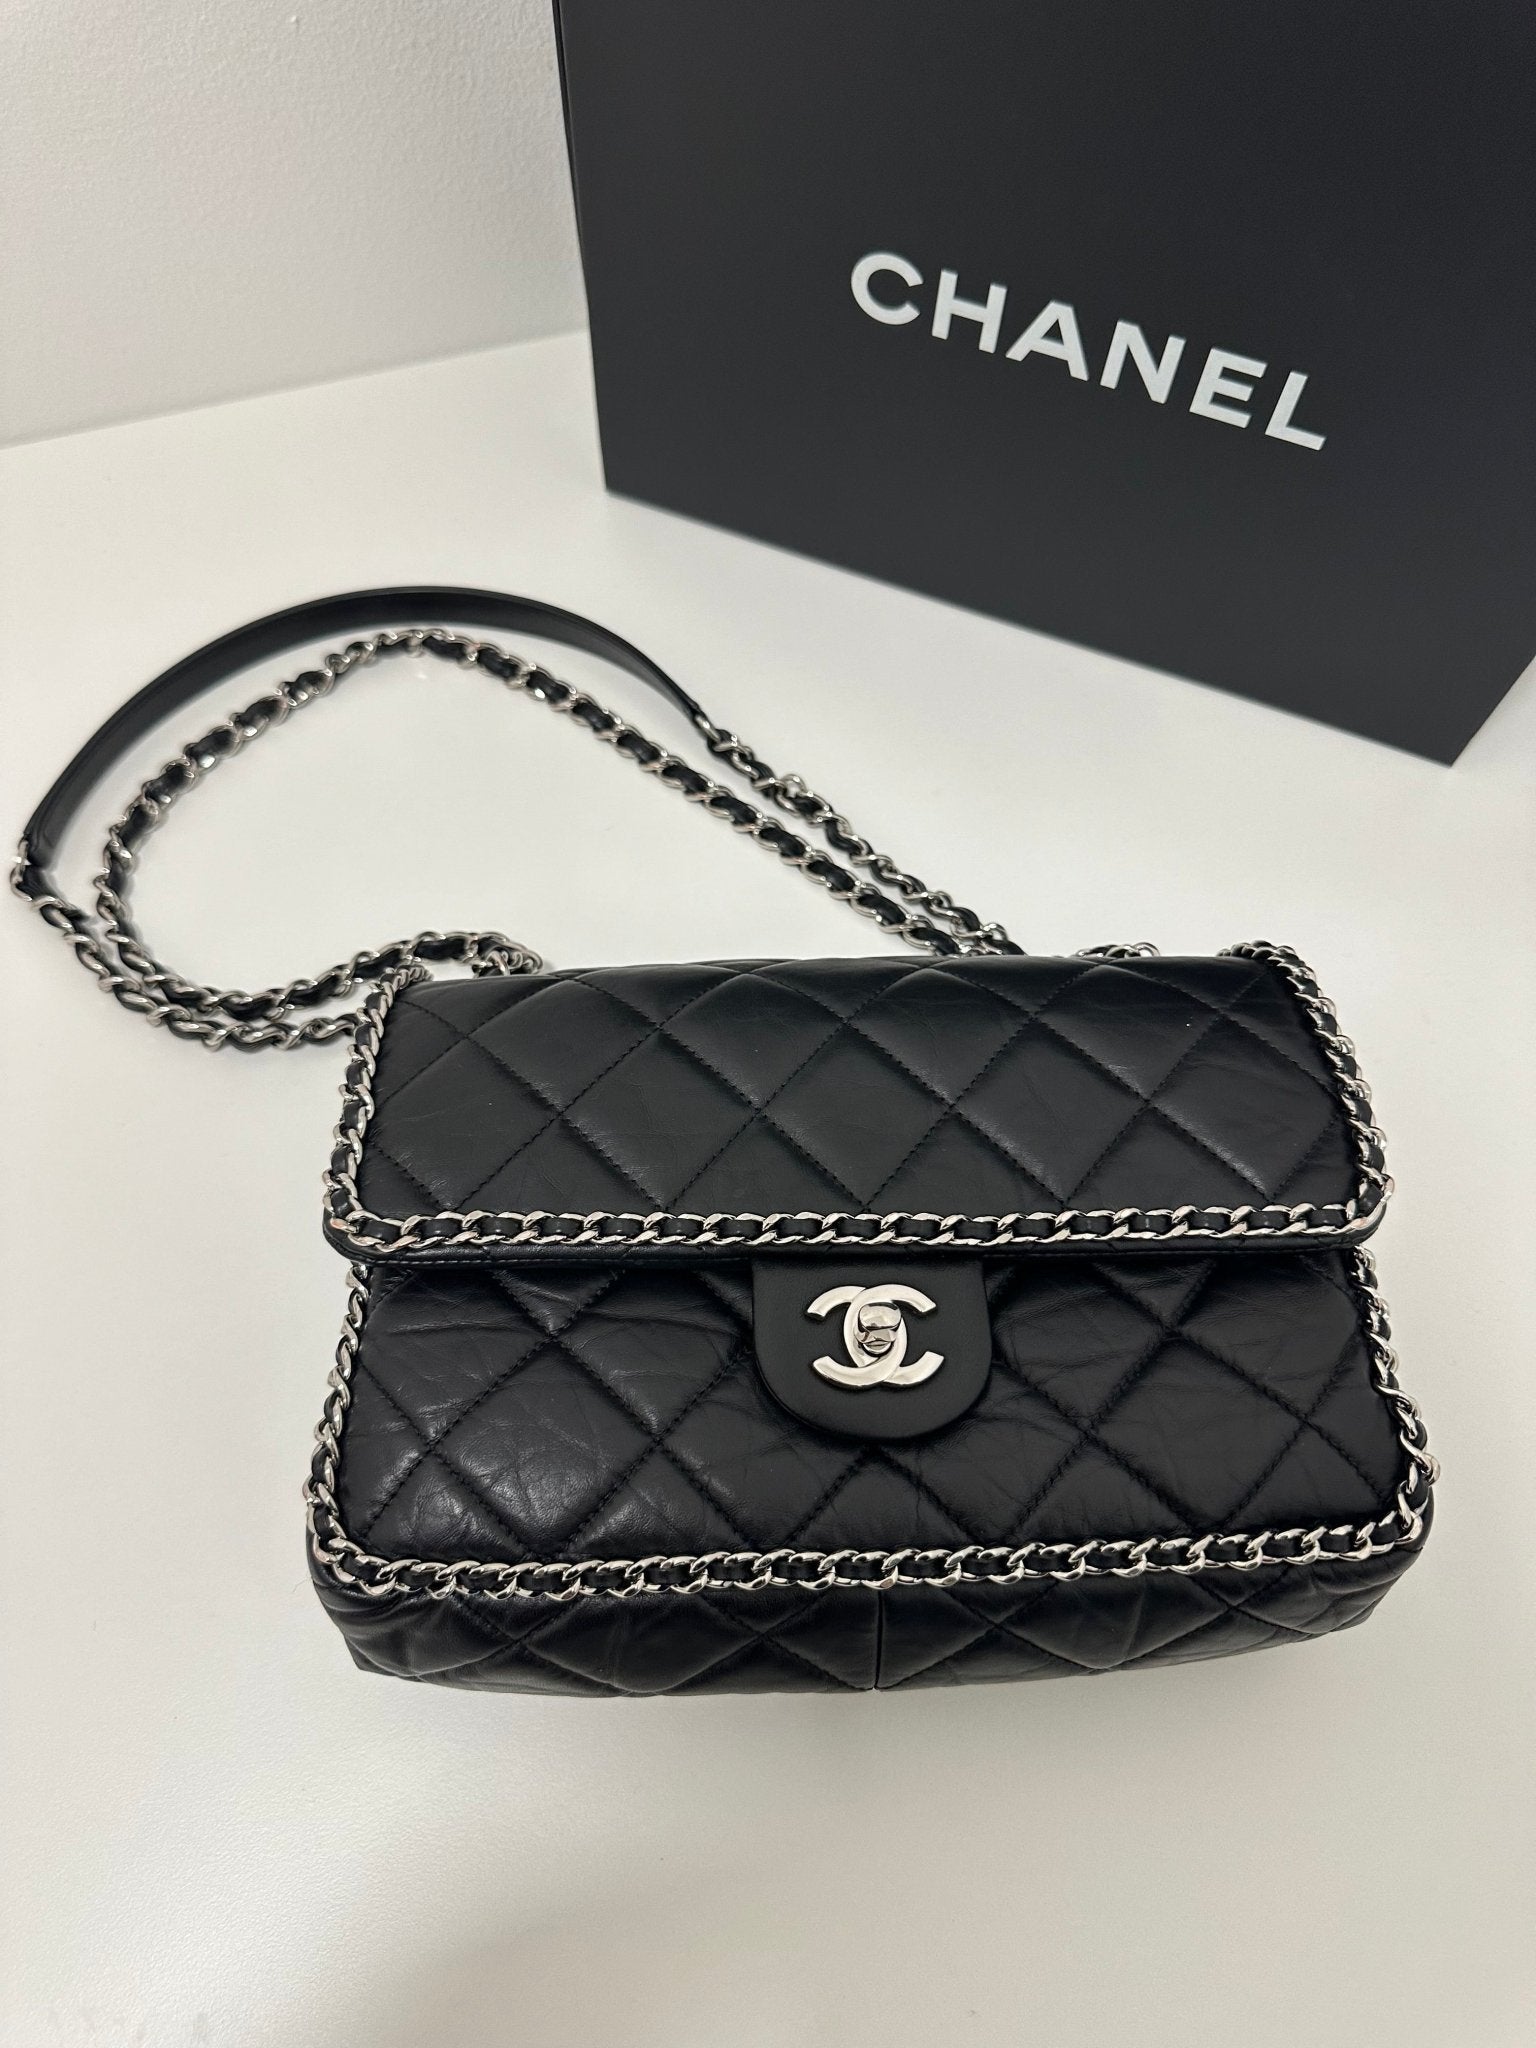 Chanel - Sac Chain Around noir - Les Folies d&